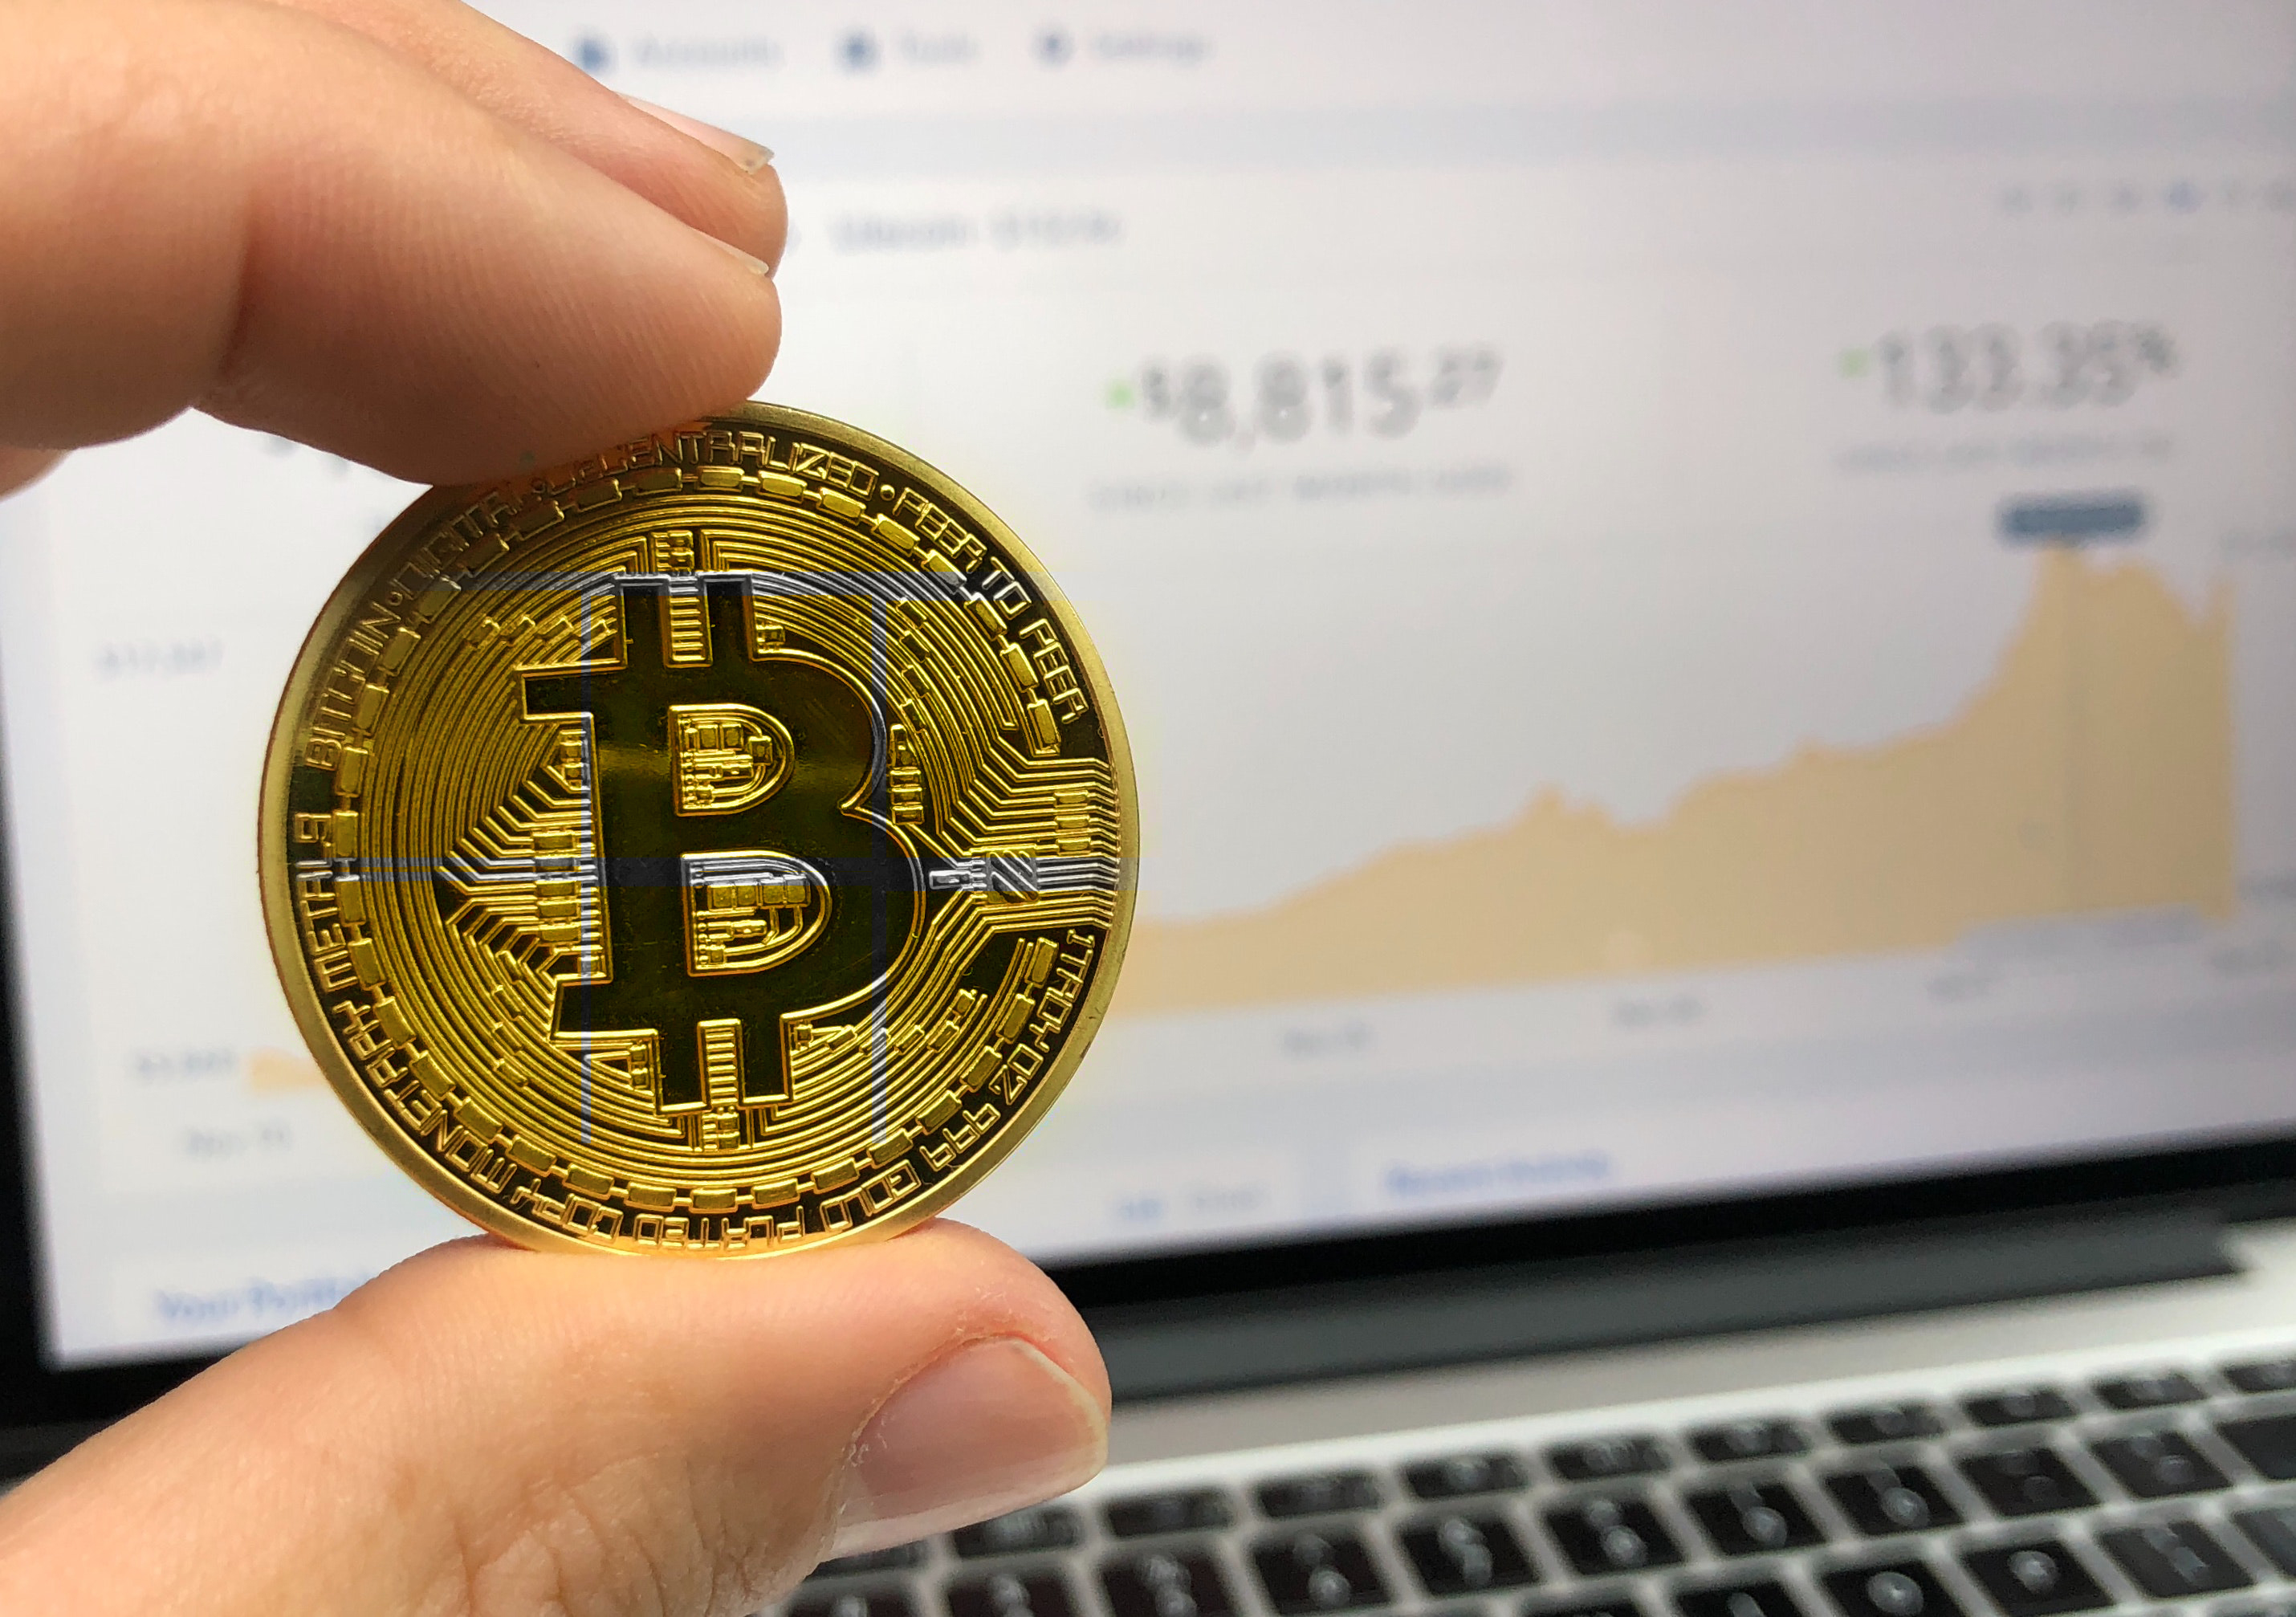 Bitcoin prediction puts its price at 55 000 USD